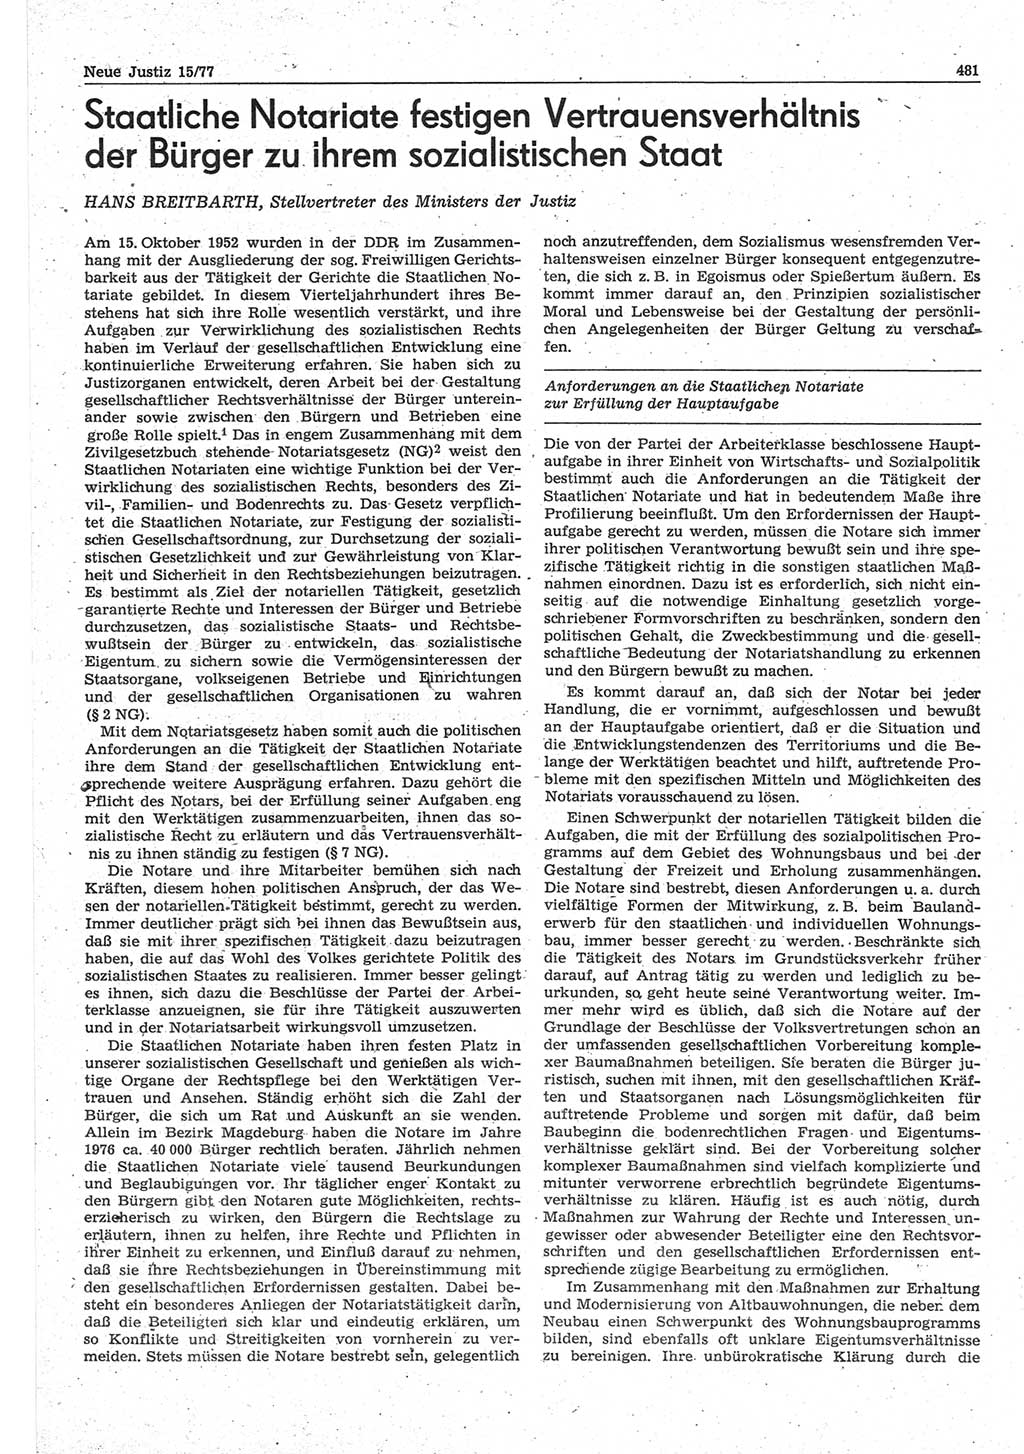 Neue Justiz (NJ), Zeitschrift für Recht und Rechtswissenschaft-Zeitschrift, sozialistisches Recht und Gesetzlichkeit, 31. Jahrgang 1977, Seite 481 (NJ DDR 1977, S. 481)